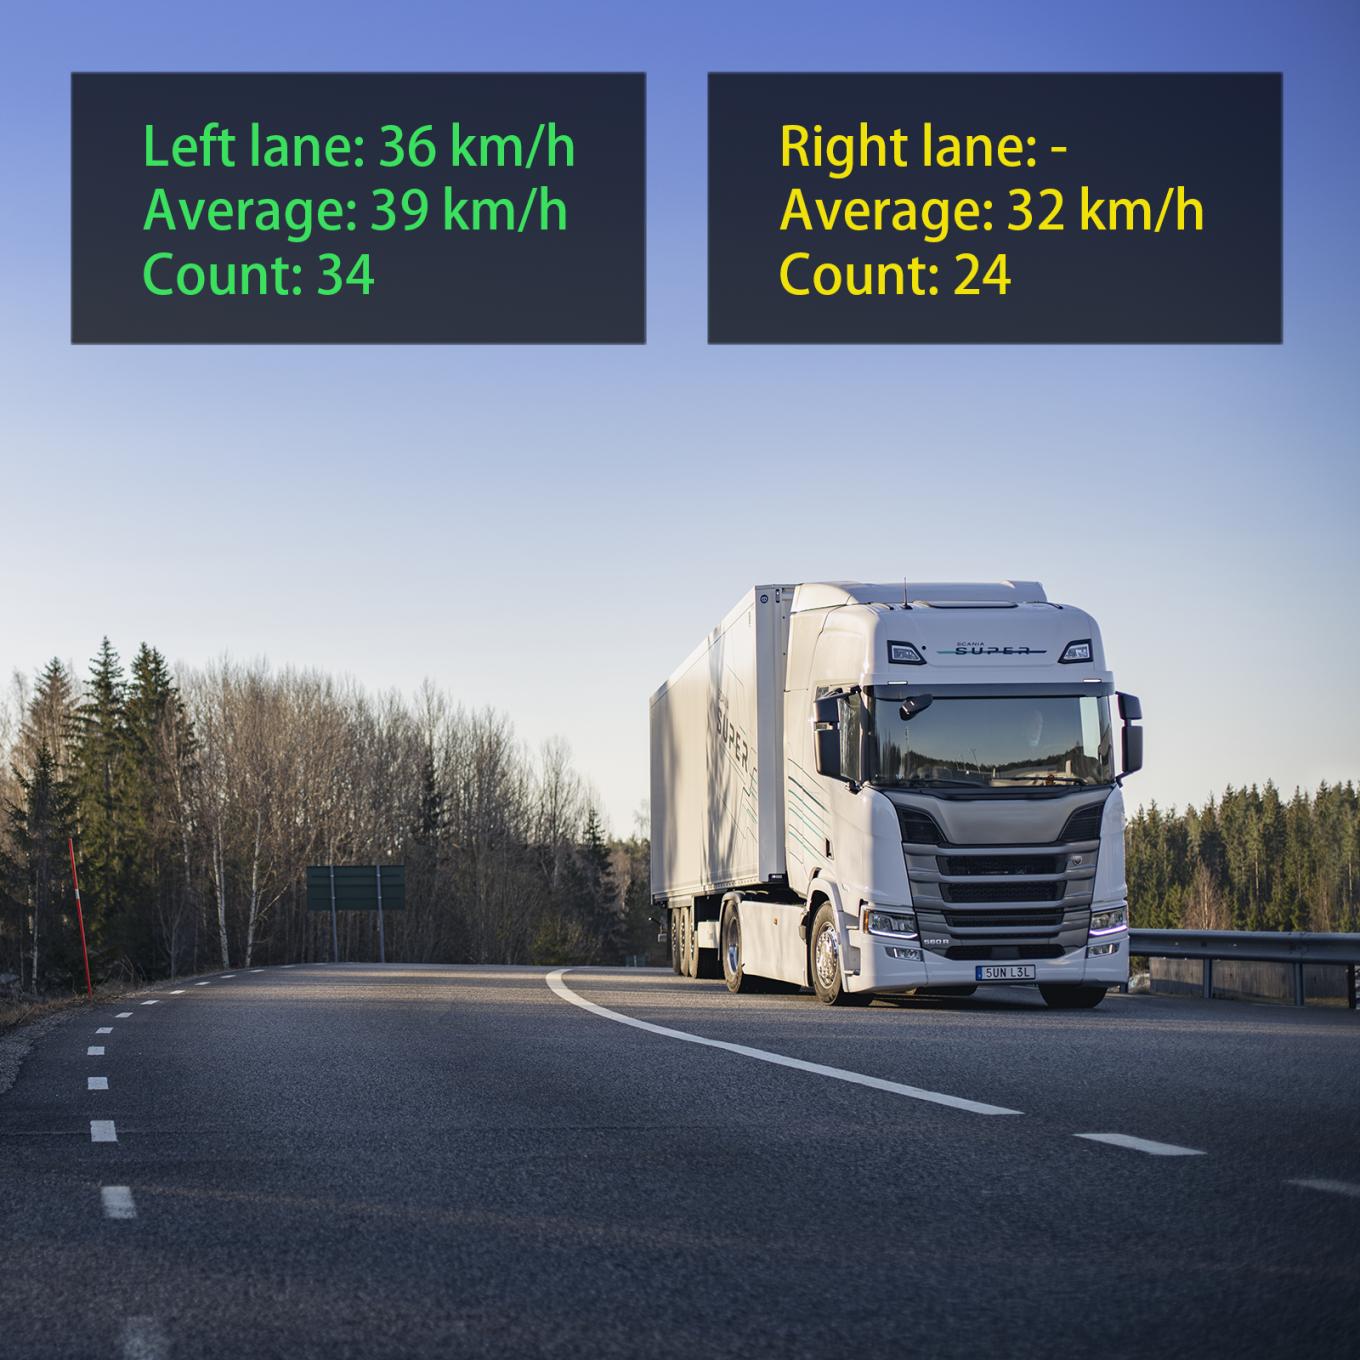 Wizualizacja AXIS Speed Monitor, z białą ciężarówką na drodze